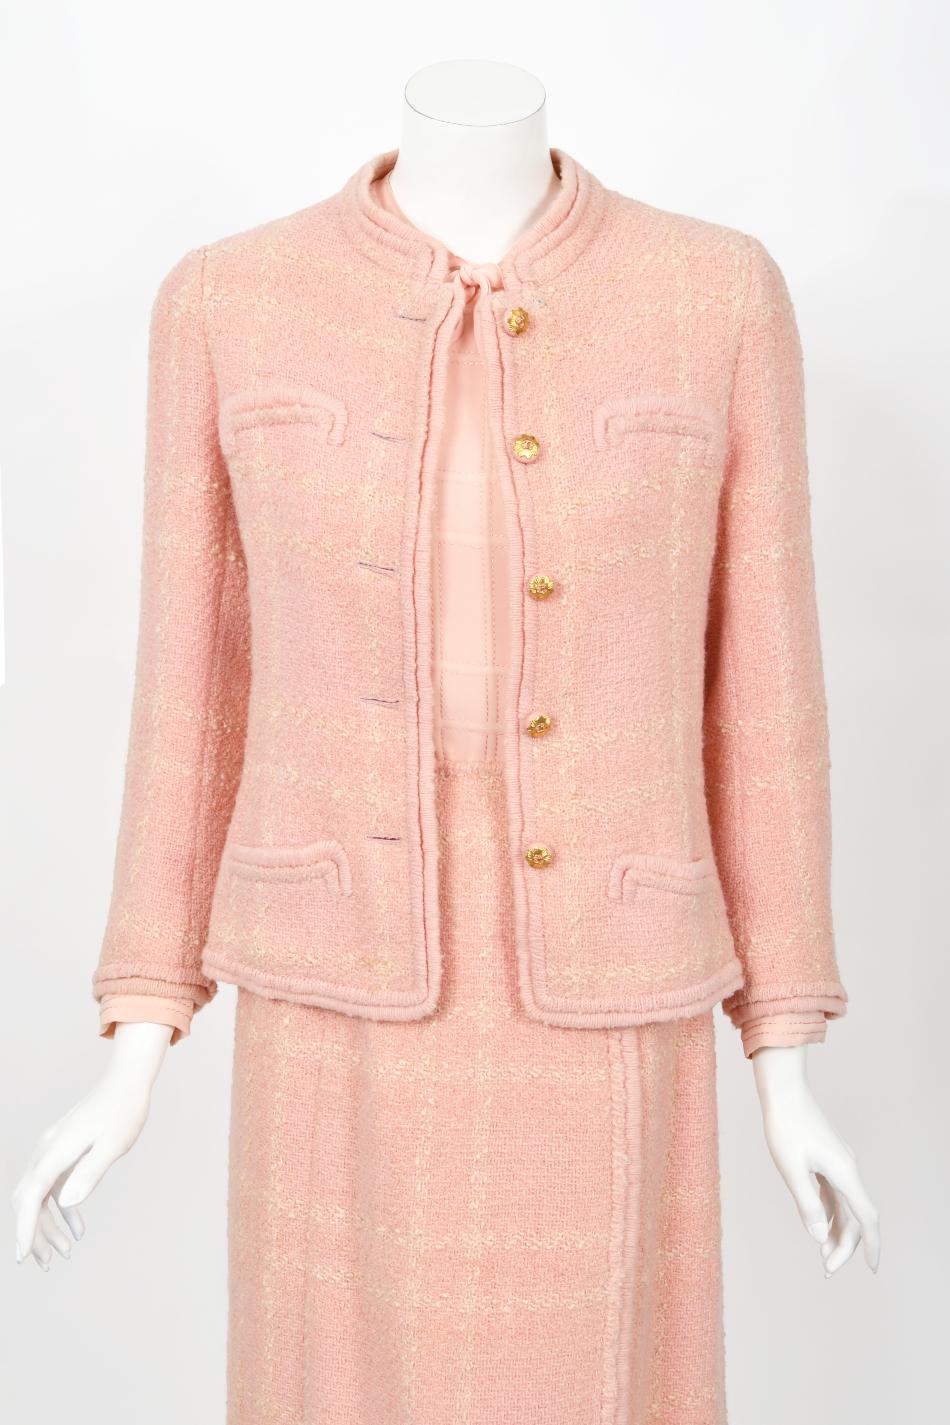 Chanel Haute Couture documenté veste chemisier jupe chemisier en laine rose vintage 1973 en vente 1